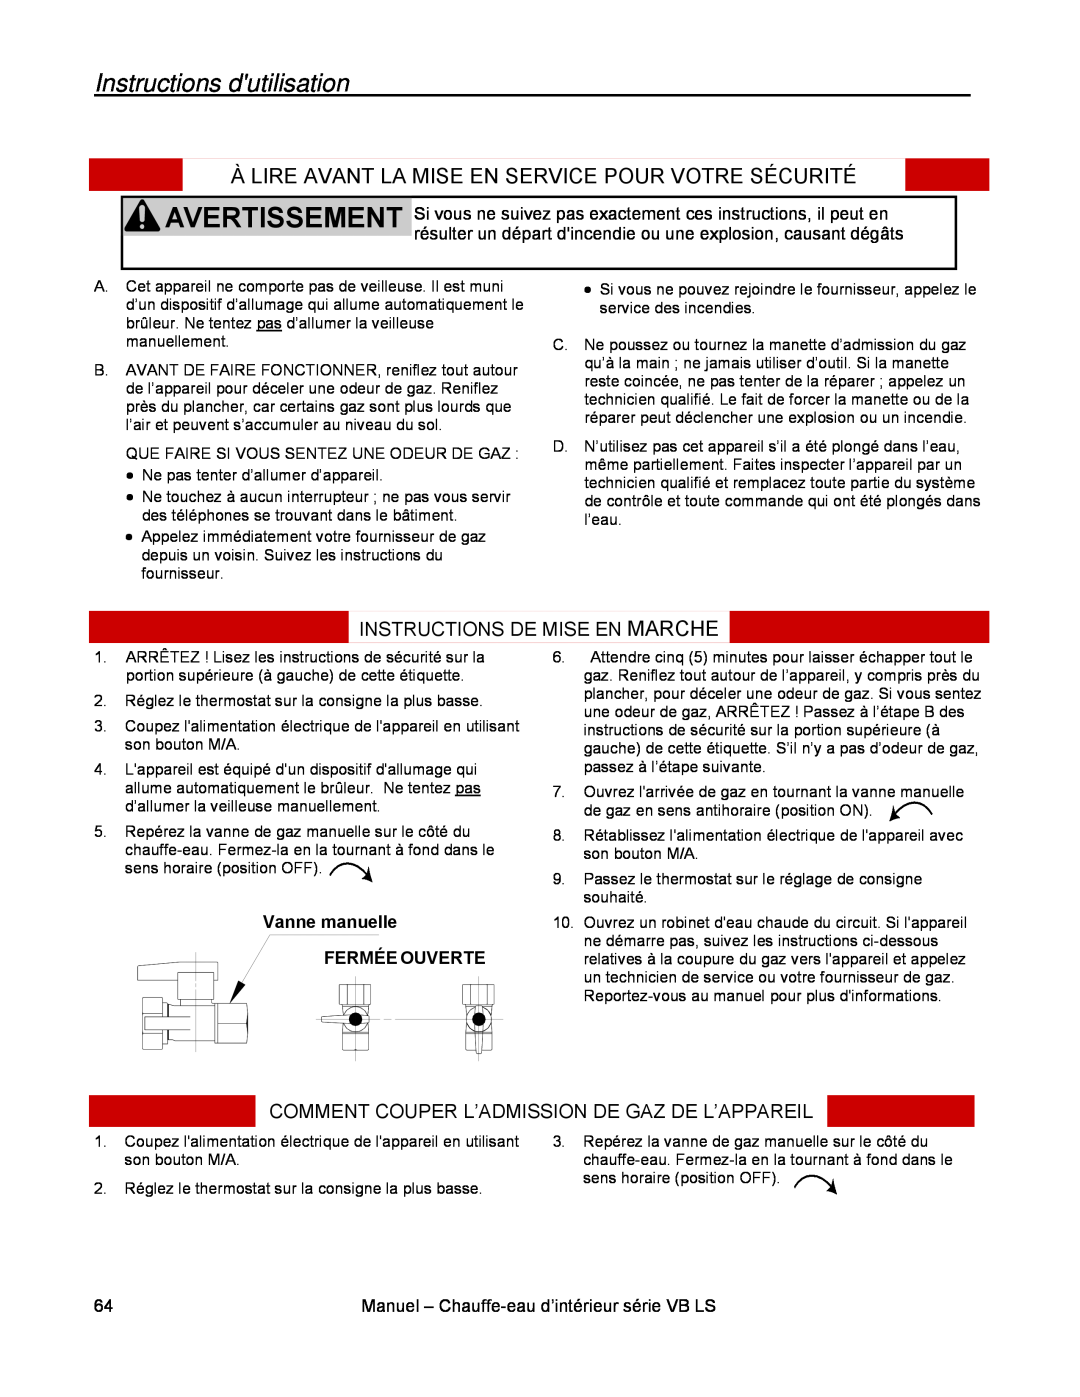 Rinnai RL94I Instructions dutilisation, Instructions De Mise En Marche, Comment Couper L’Admission De Gaz De L’Appareil 